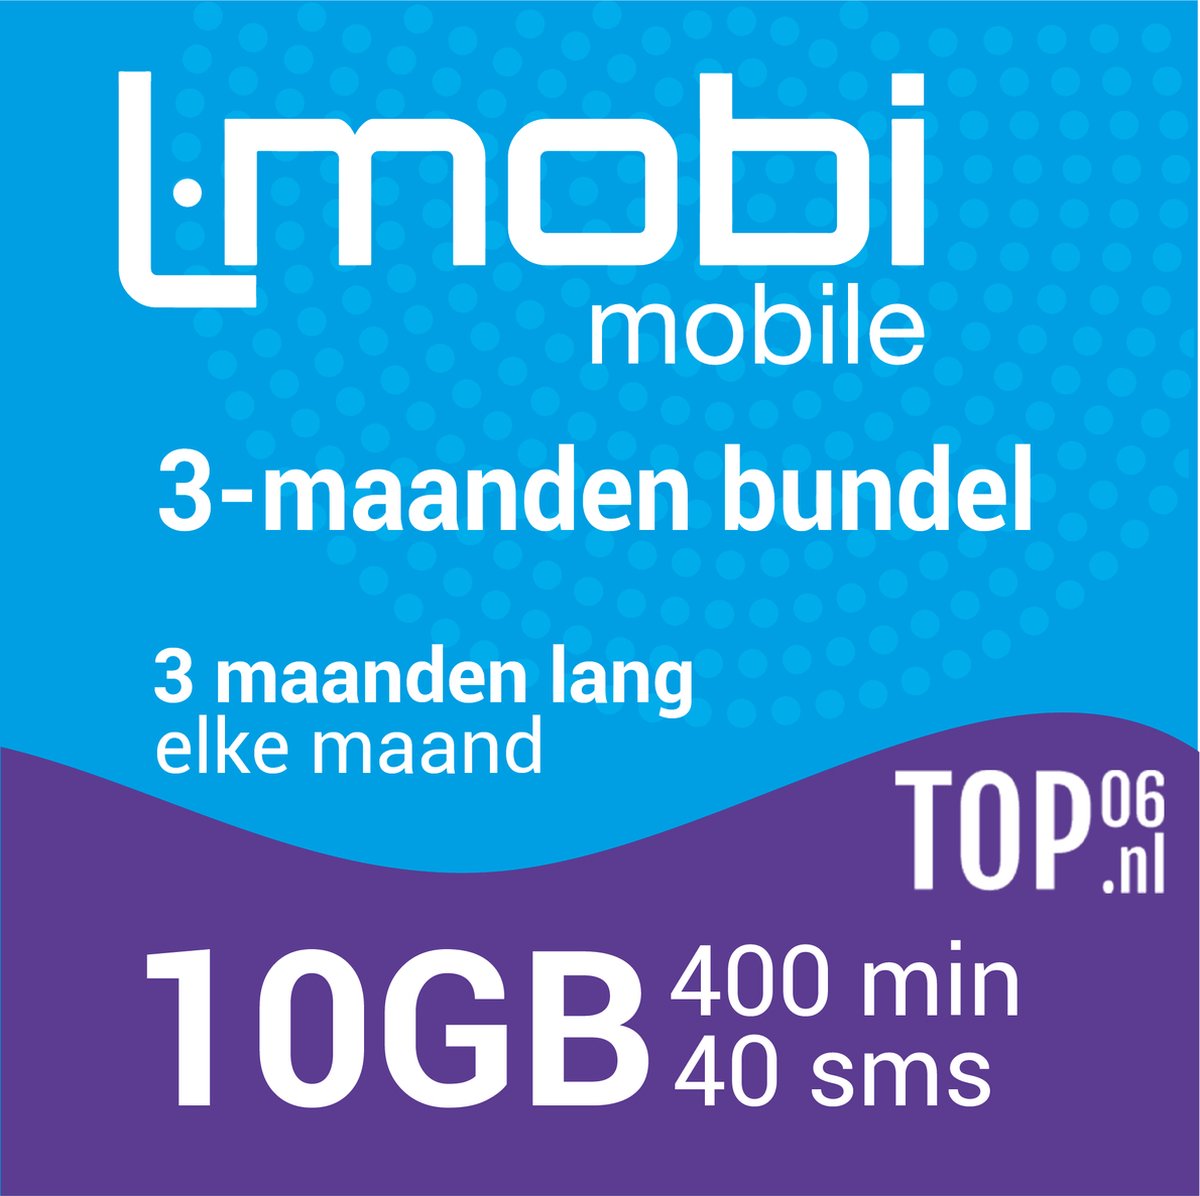 L-Mobi PrePaid Simkaart | 3 maanden bundel | 10GB, 1000 belminuten & 100 sms'jes per maand | Netwerk van KPN